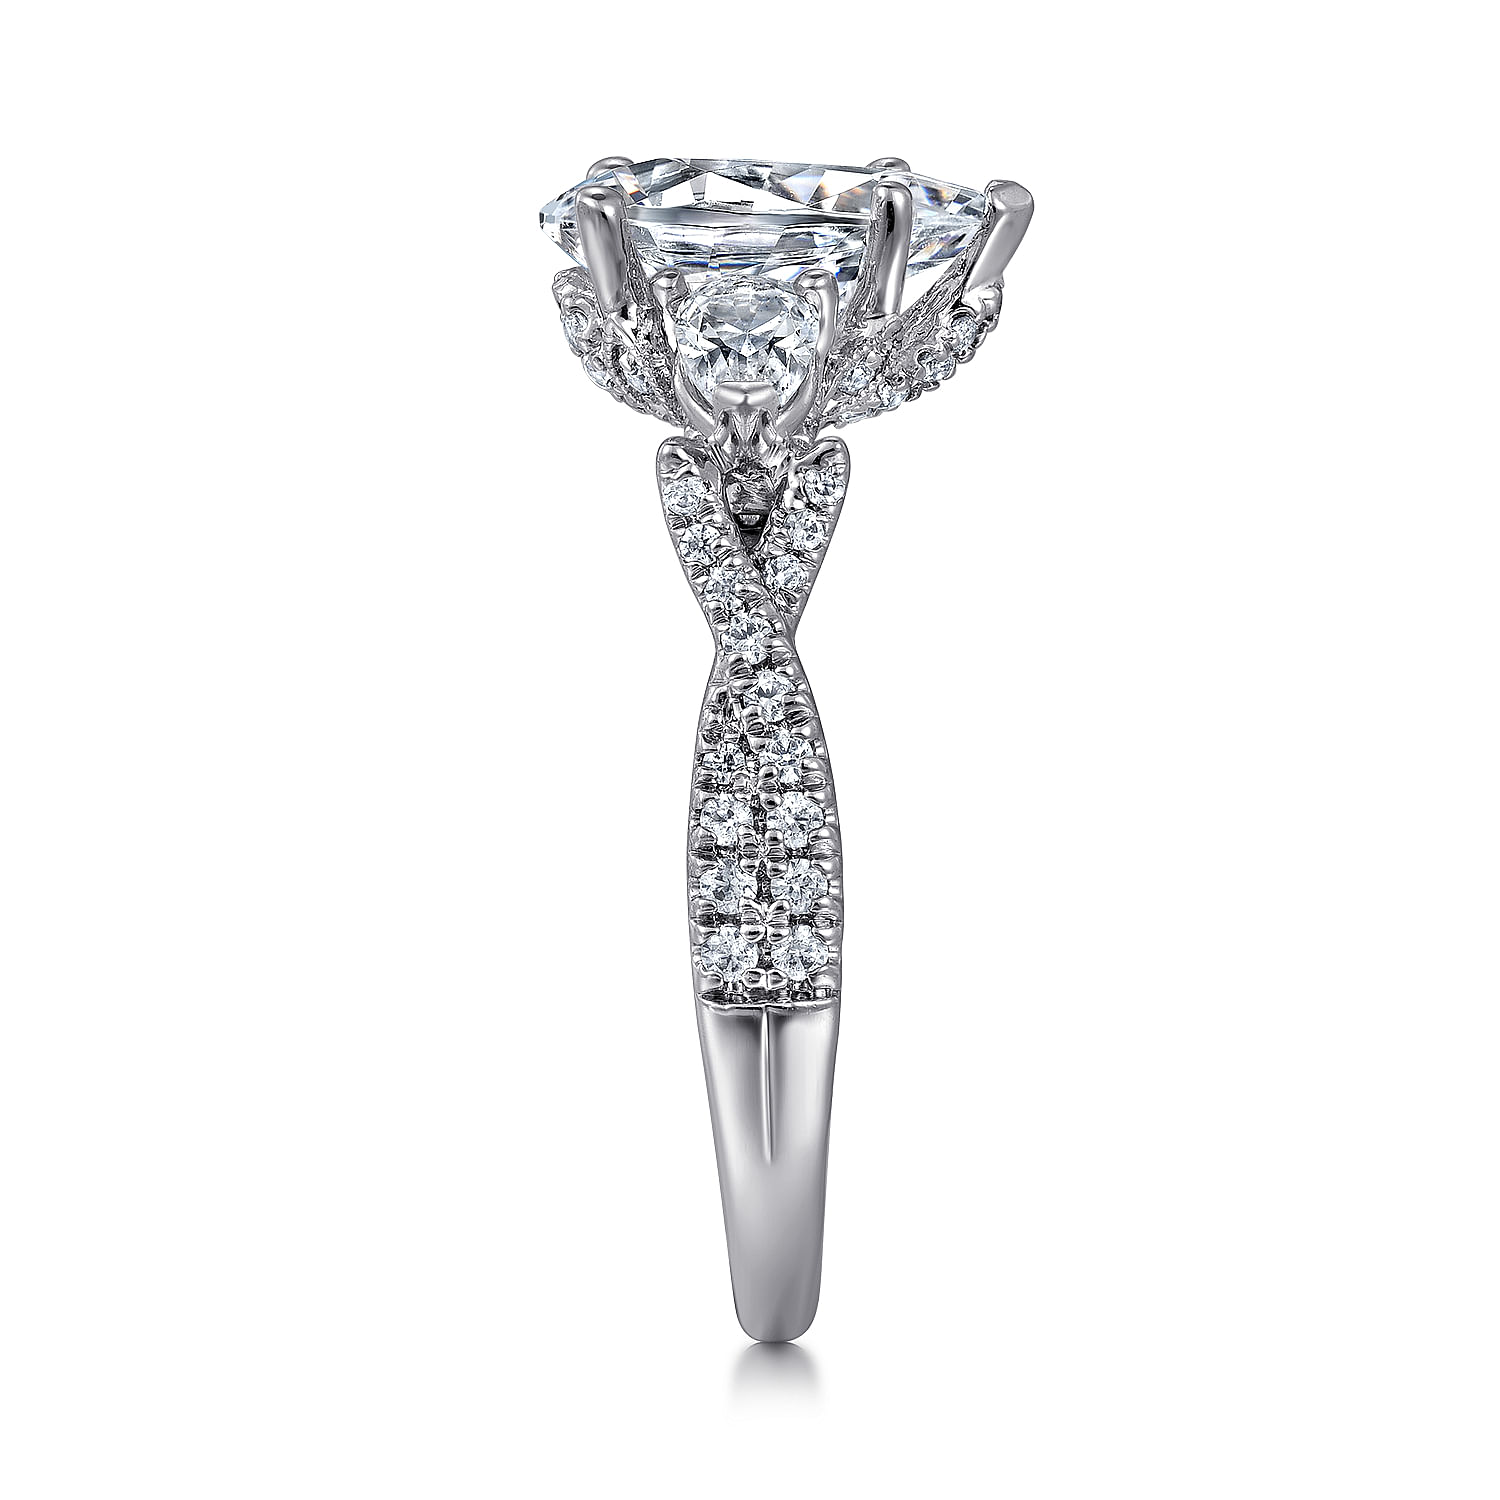 18K White Gold Pear Shape Diamond Engagement Ring